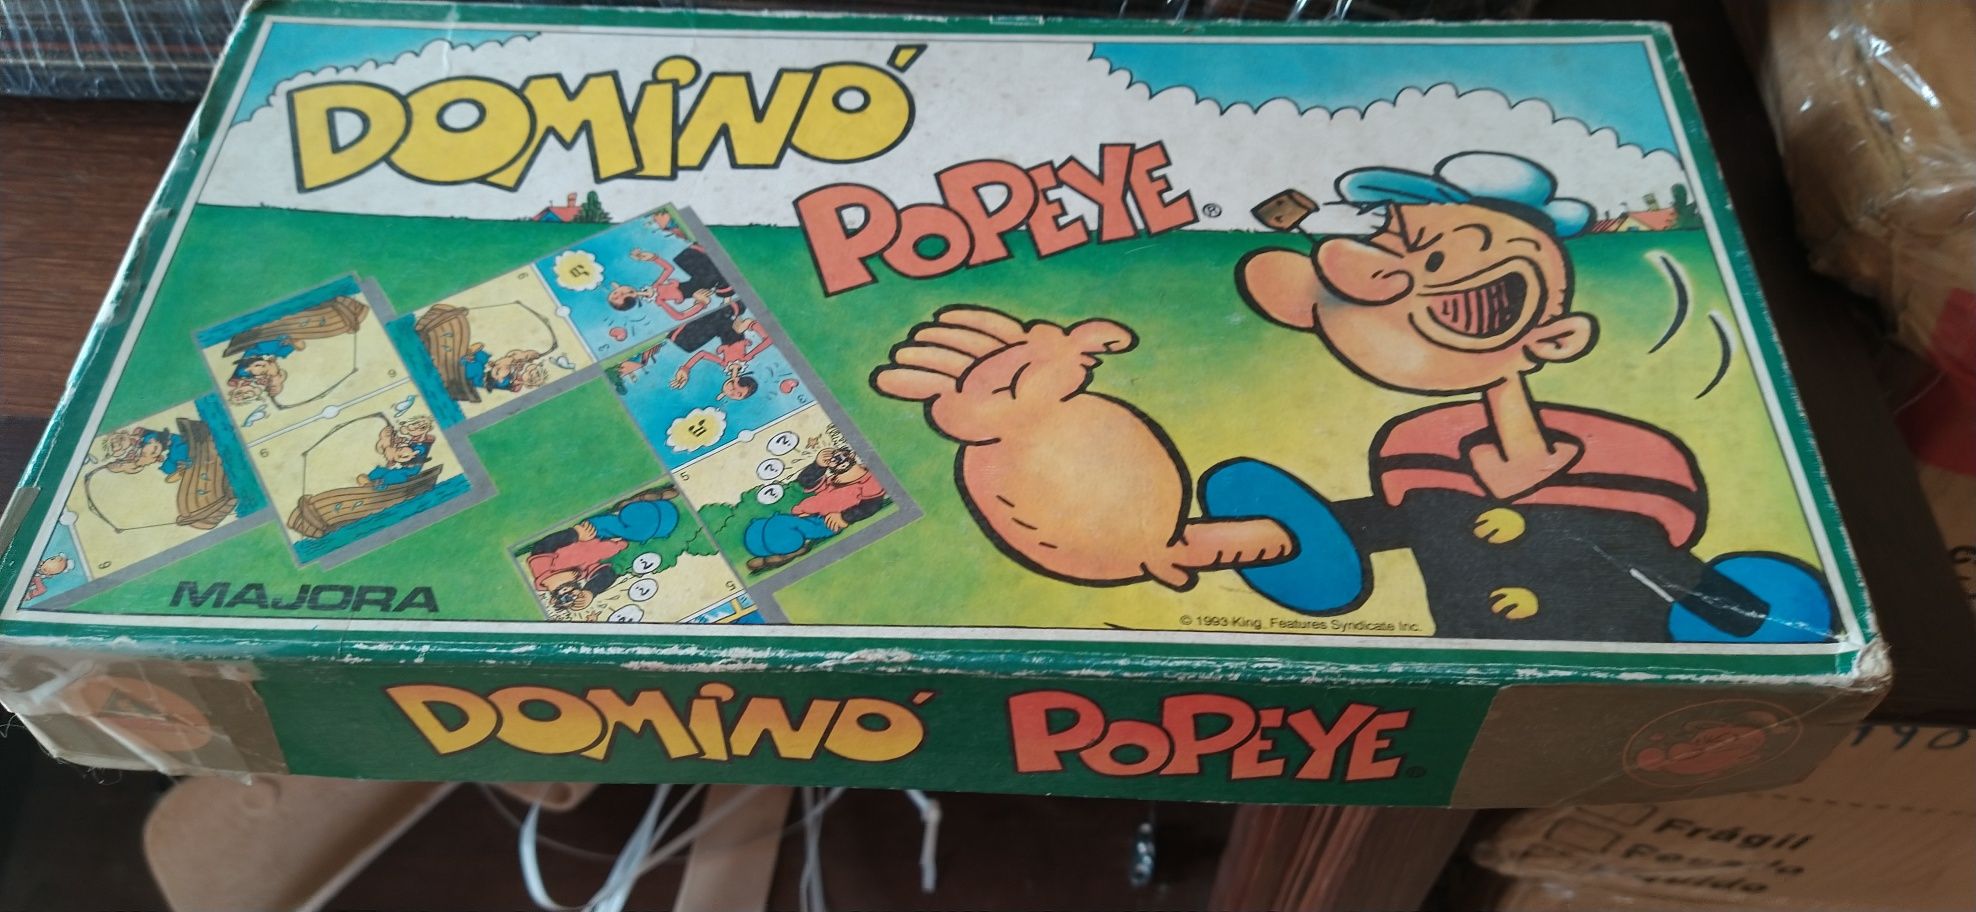 Dominó Popeye coleção